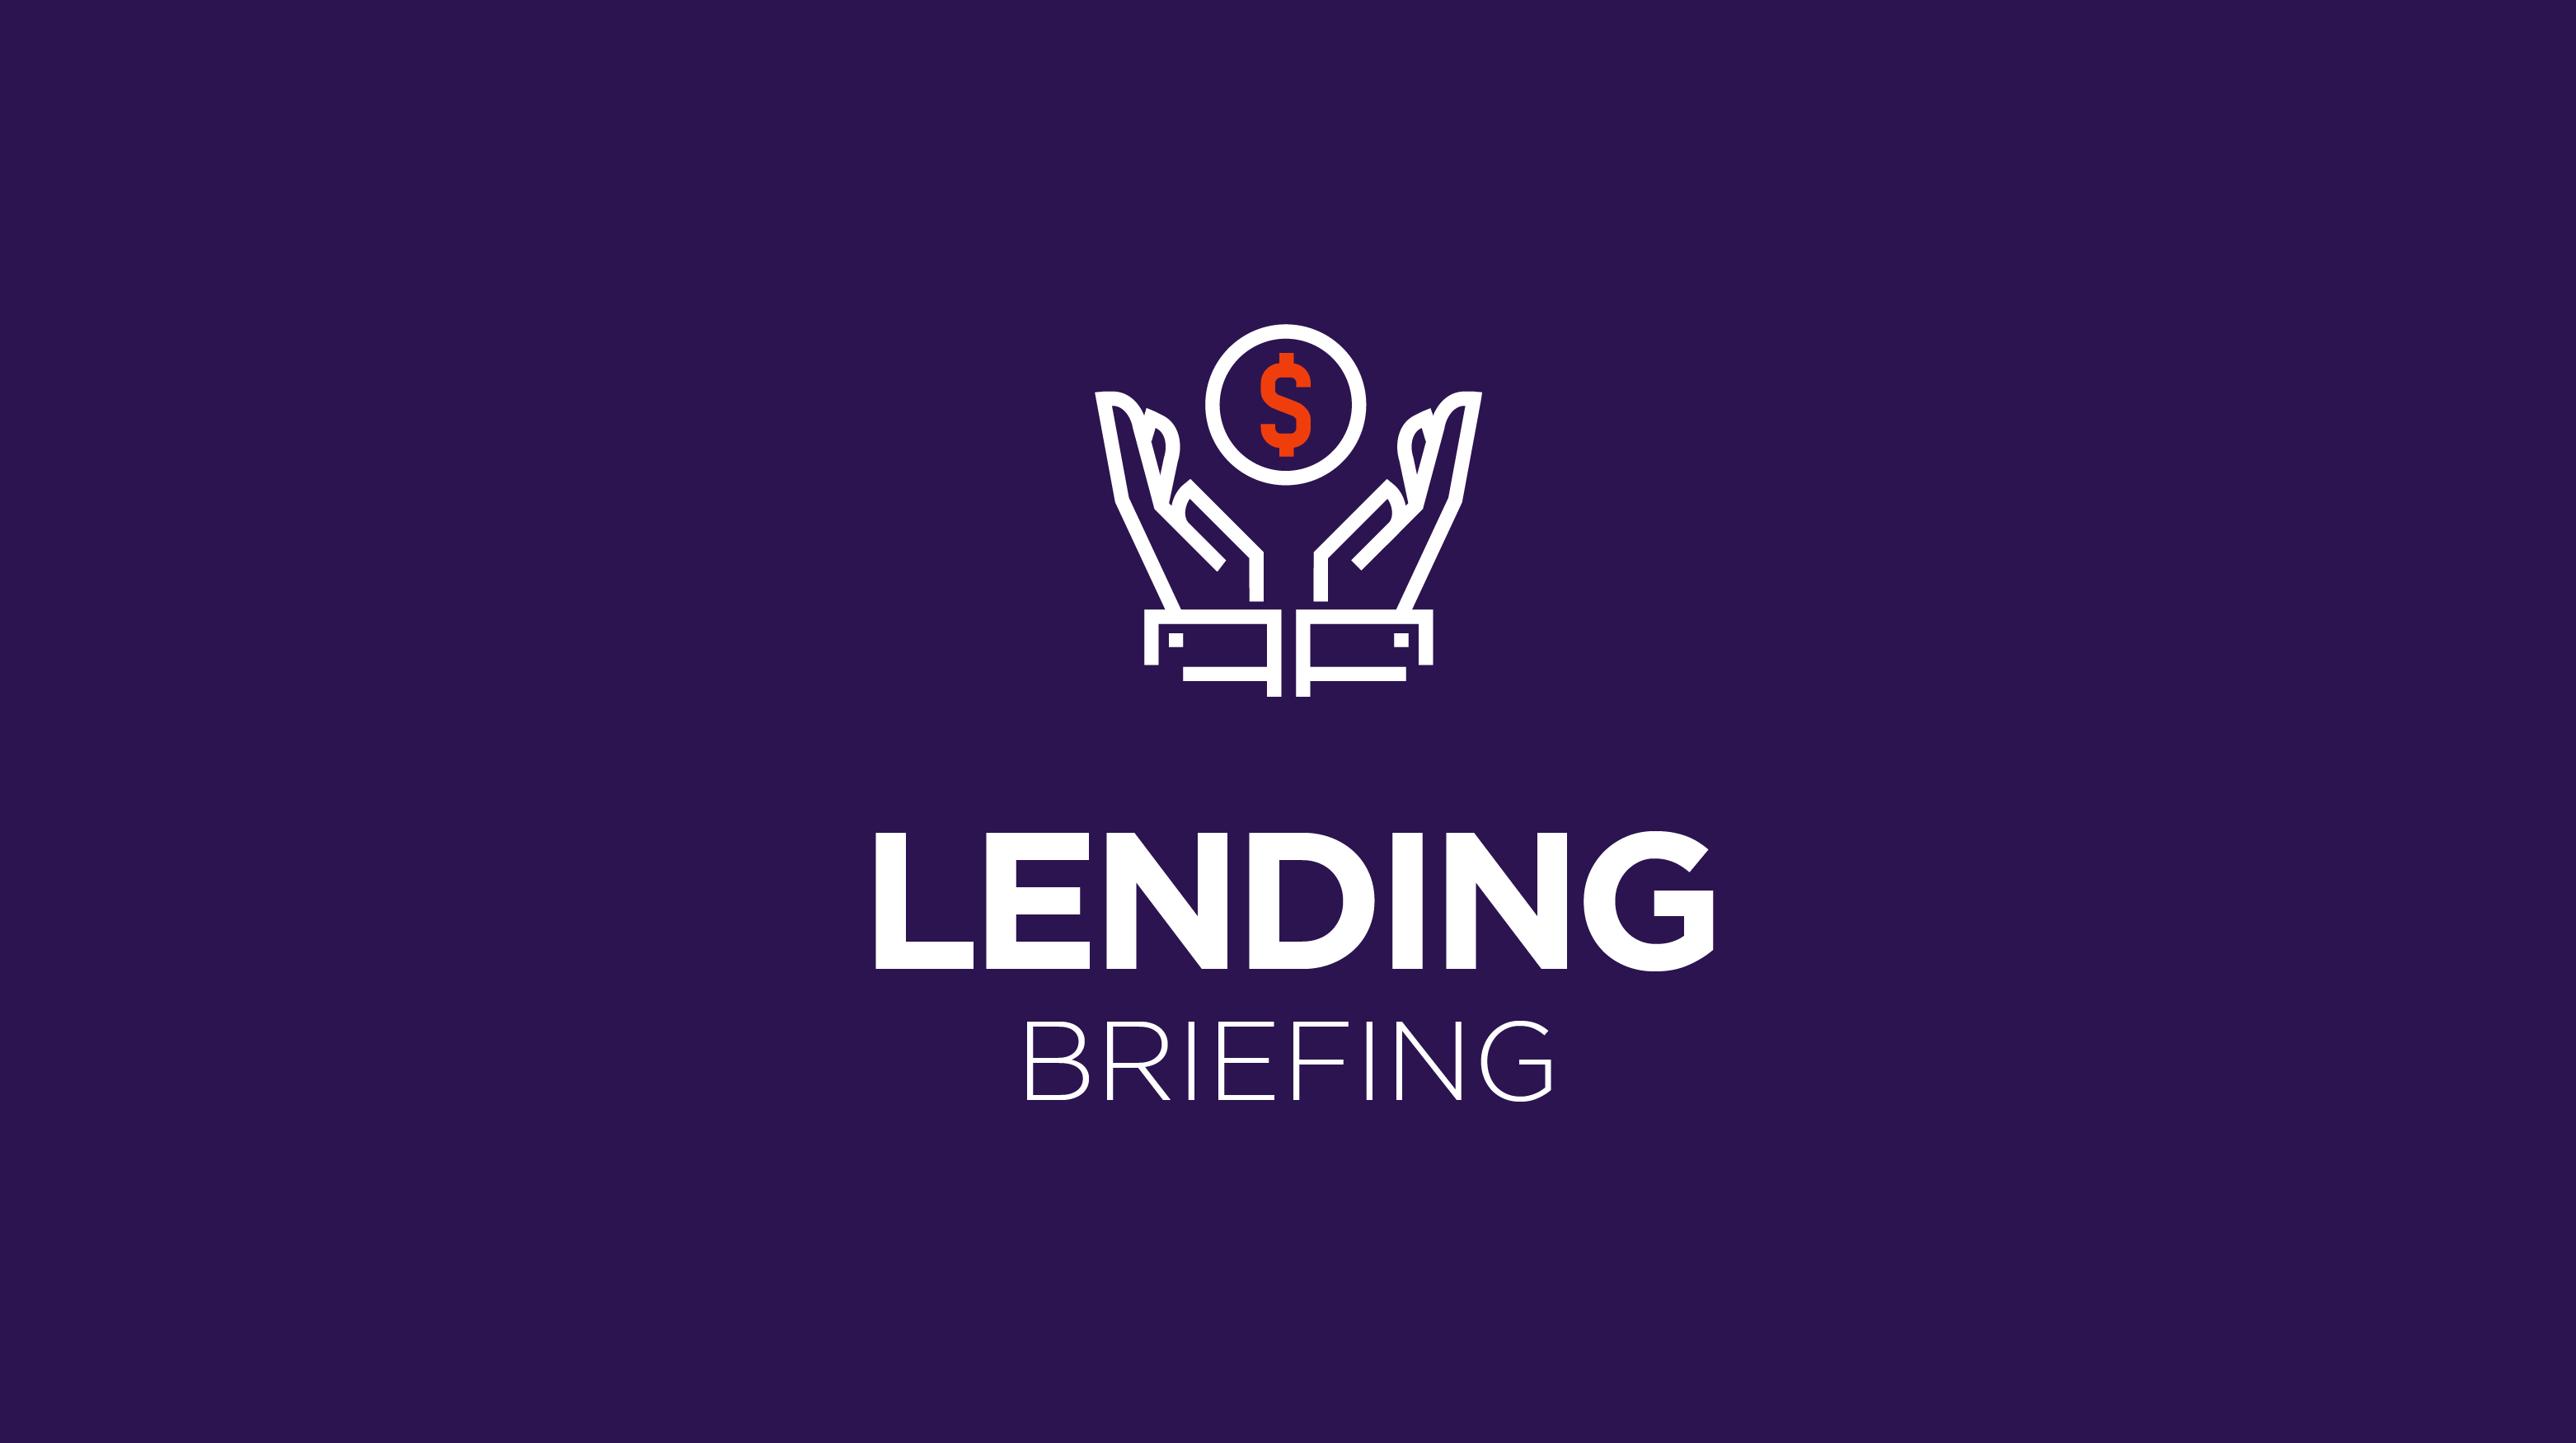 Lending Briefing: 2021 BNPL results, C&I lending picking up again